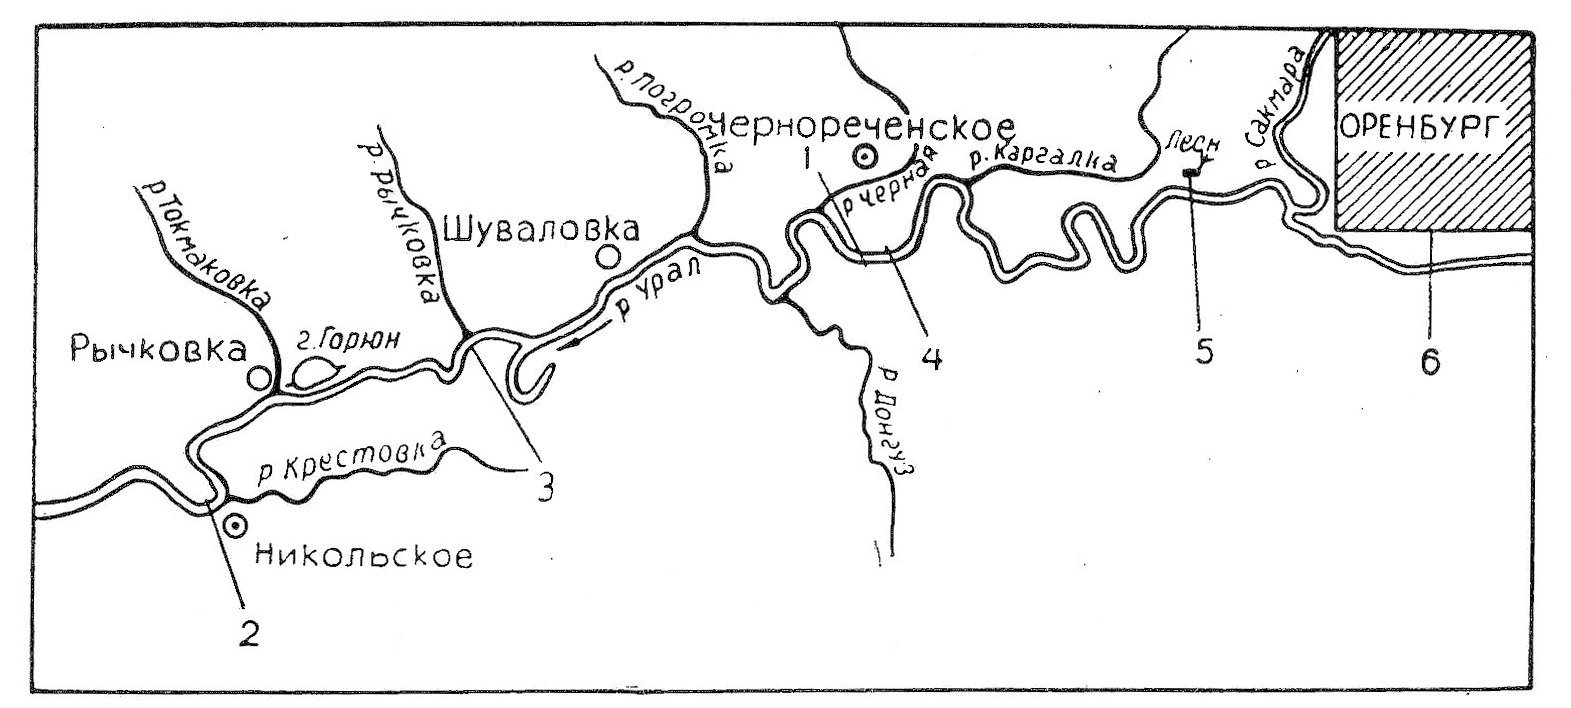 Где течет река урал. Река Урал на карте. Схема реки Урал. Схема реки Сакмара. Схема реки Сакмара в Оренбургской области.